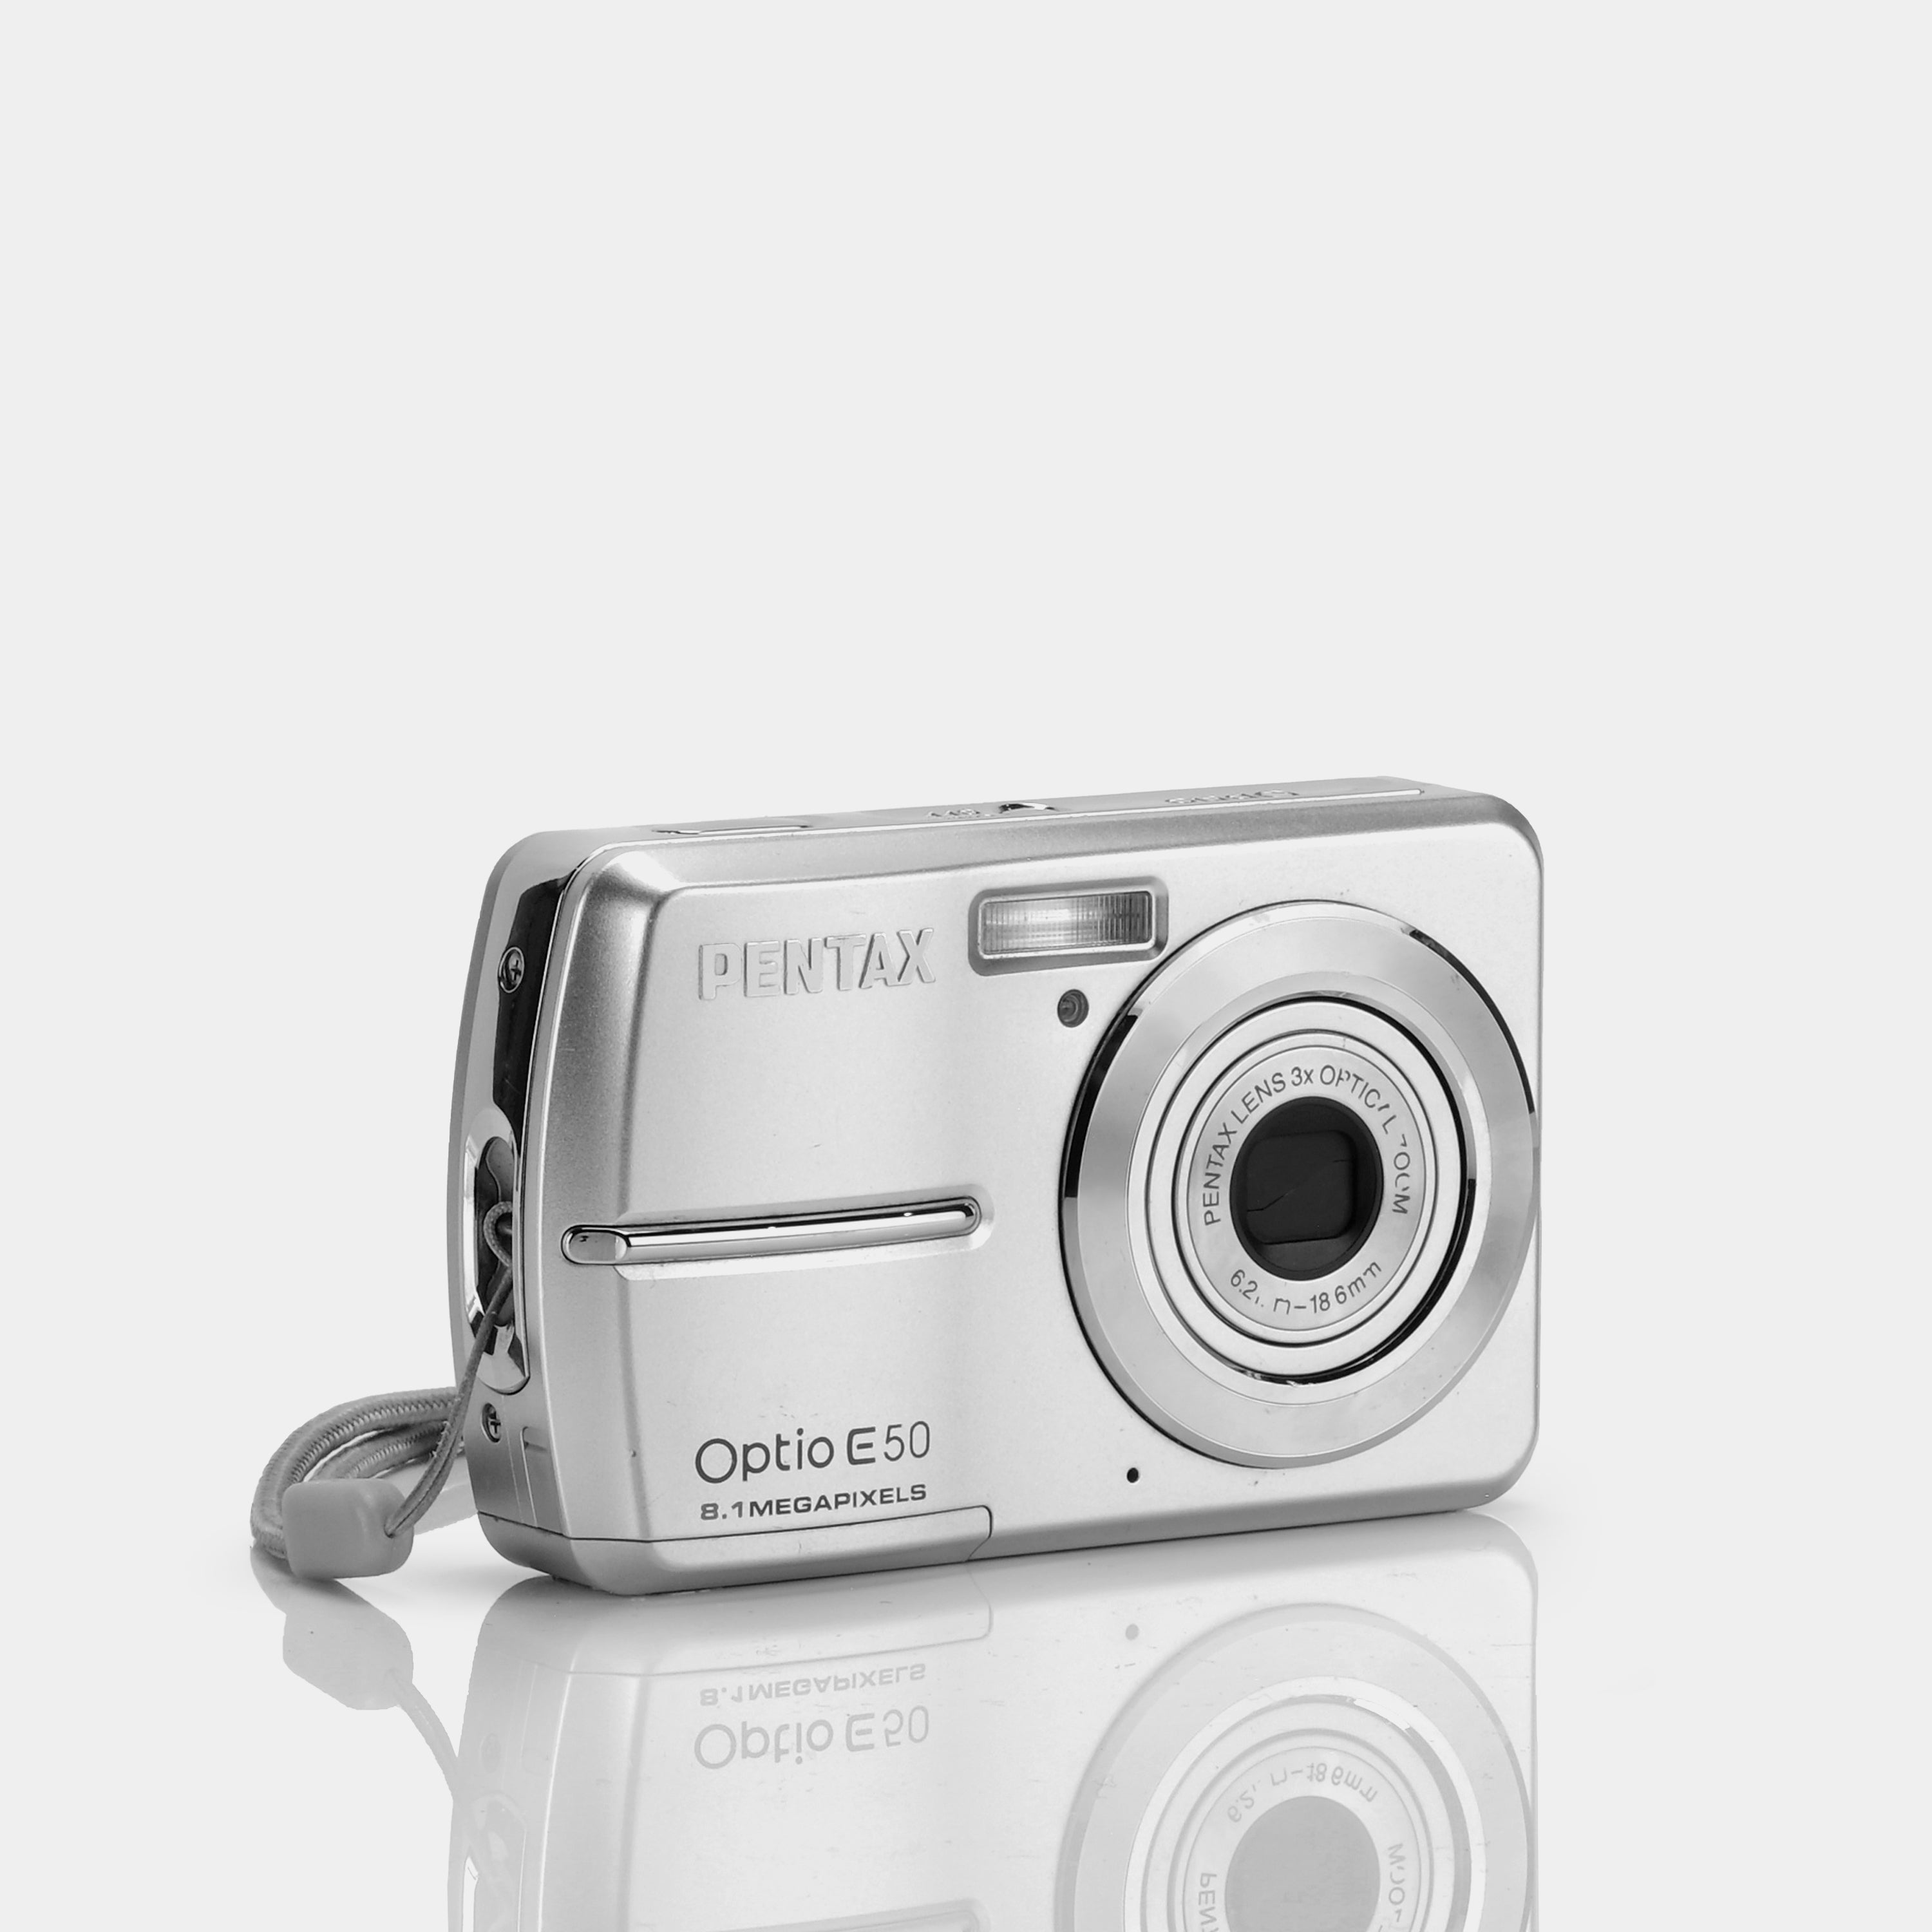 Pentax Optio E50 Point and Shoot Digital Camera